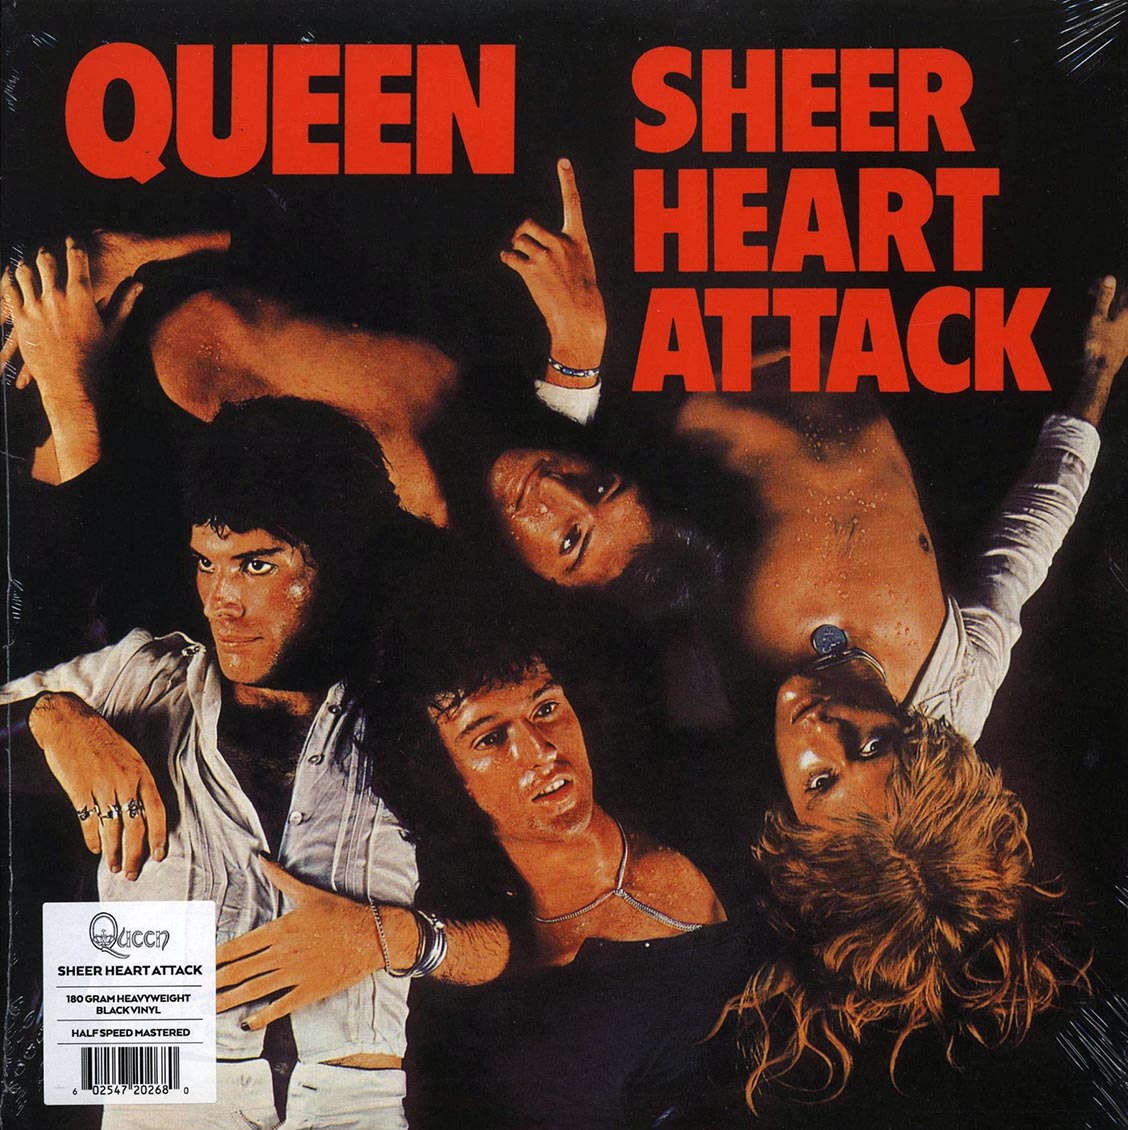 Queen - Sheer Heart Attack (180g) (remastered) (audiophile) - Vinyl LP